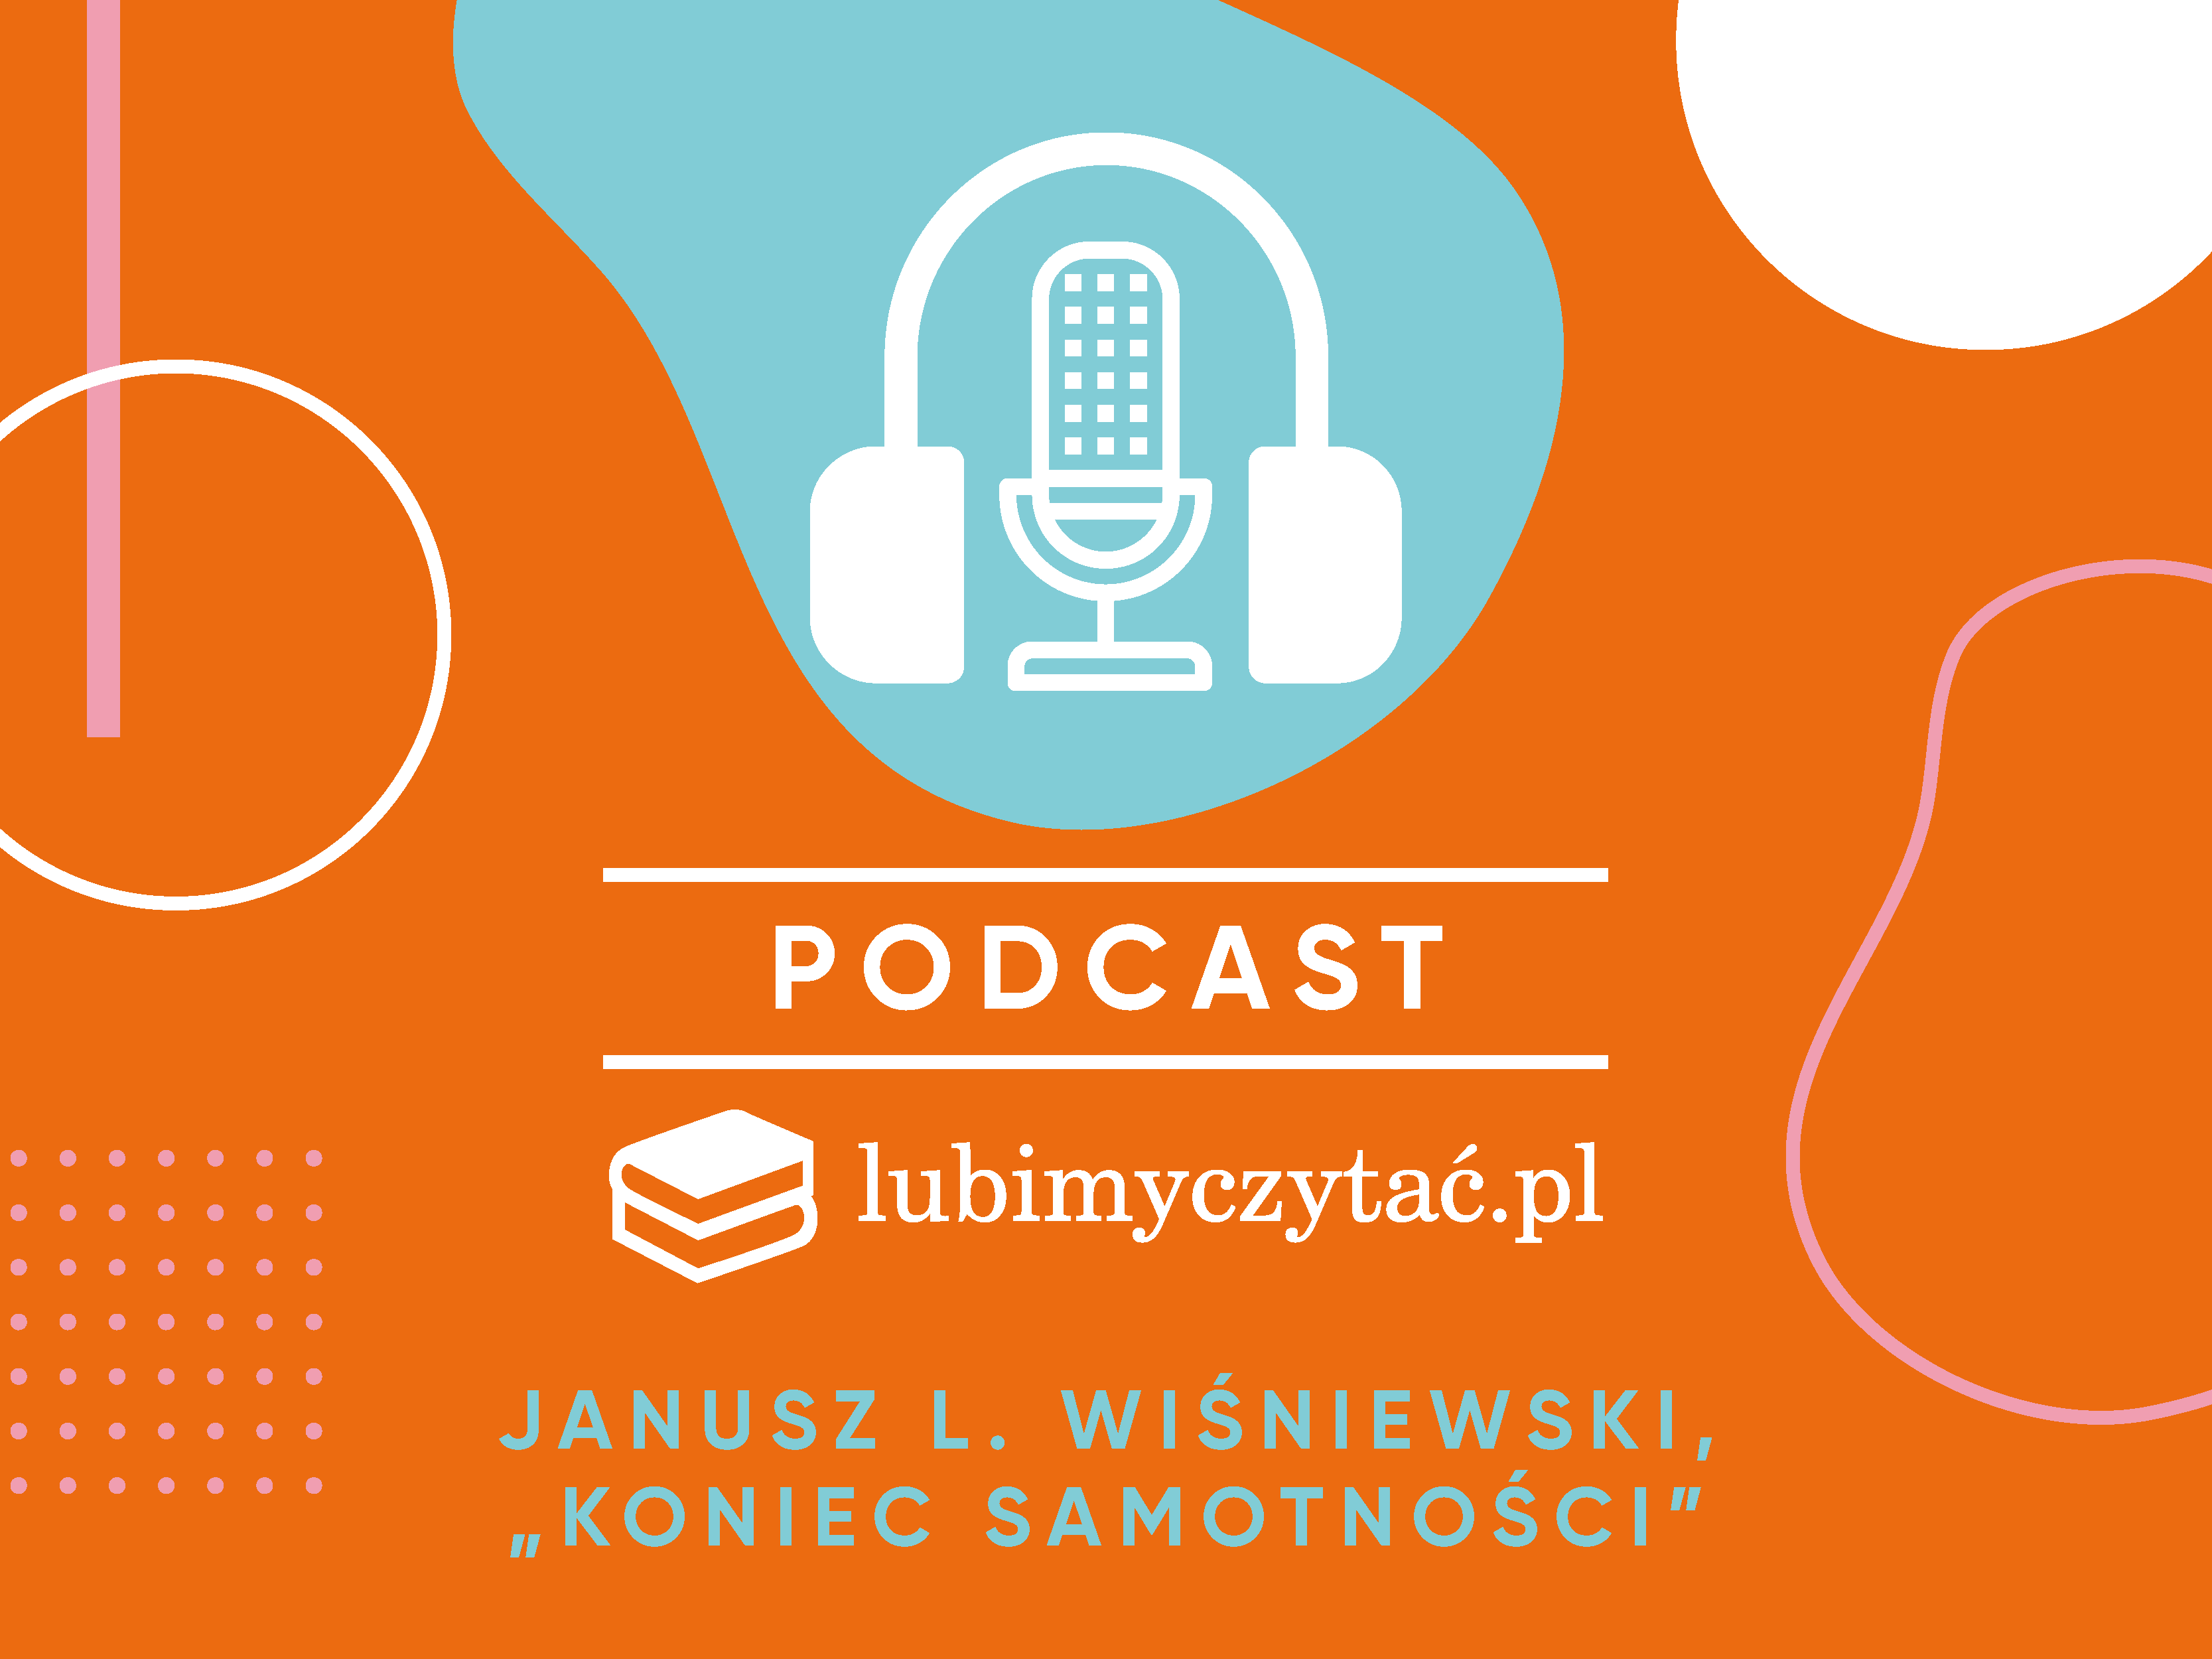 Podcast lubimyczytać.pl. Janusz L. Wiśniewski w pierwszym odcinku